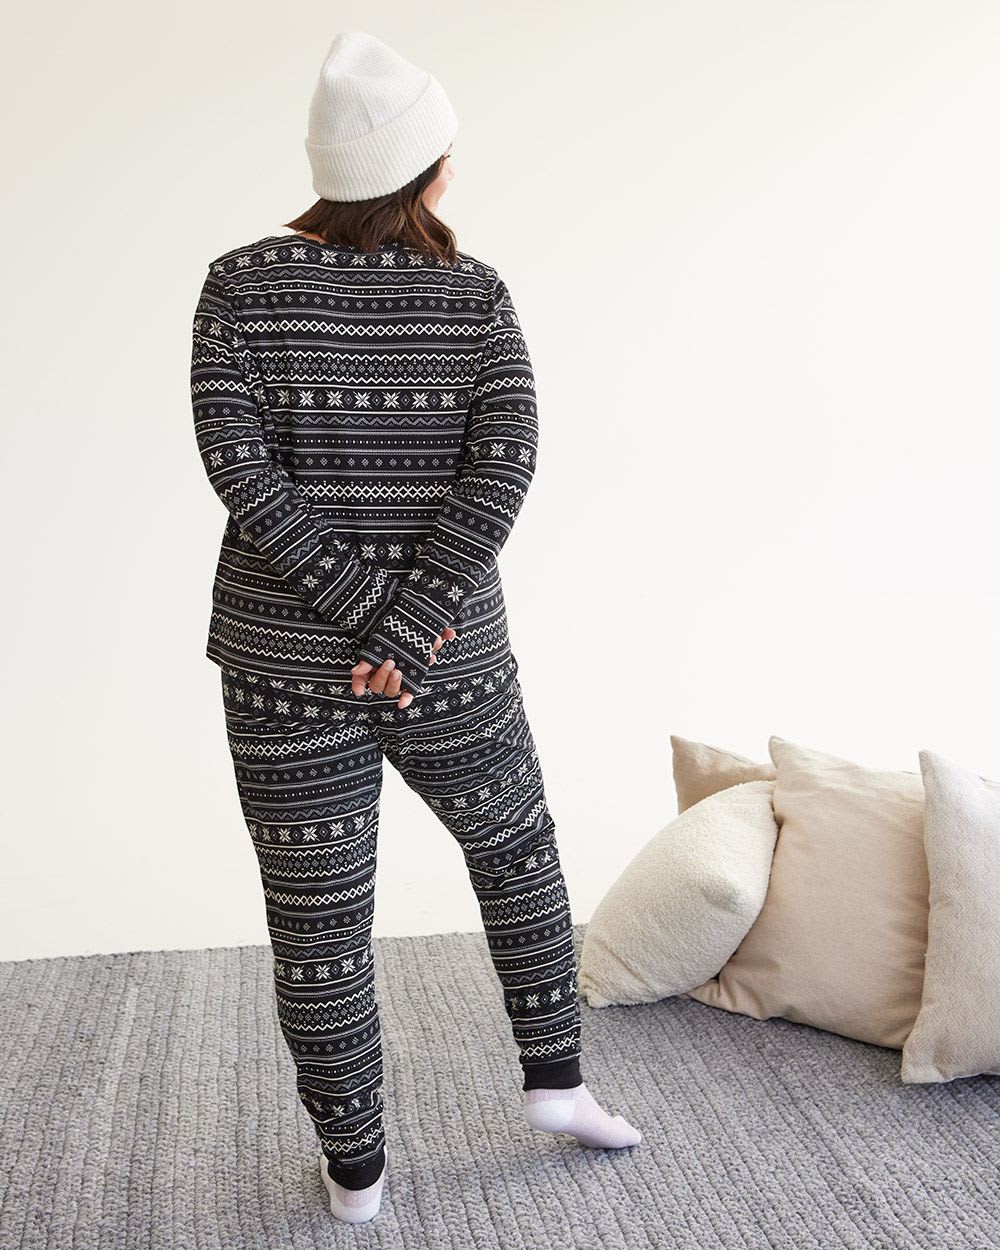 Long-Sleeve Top and Jogger Pyjama Set